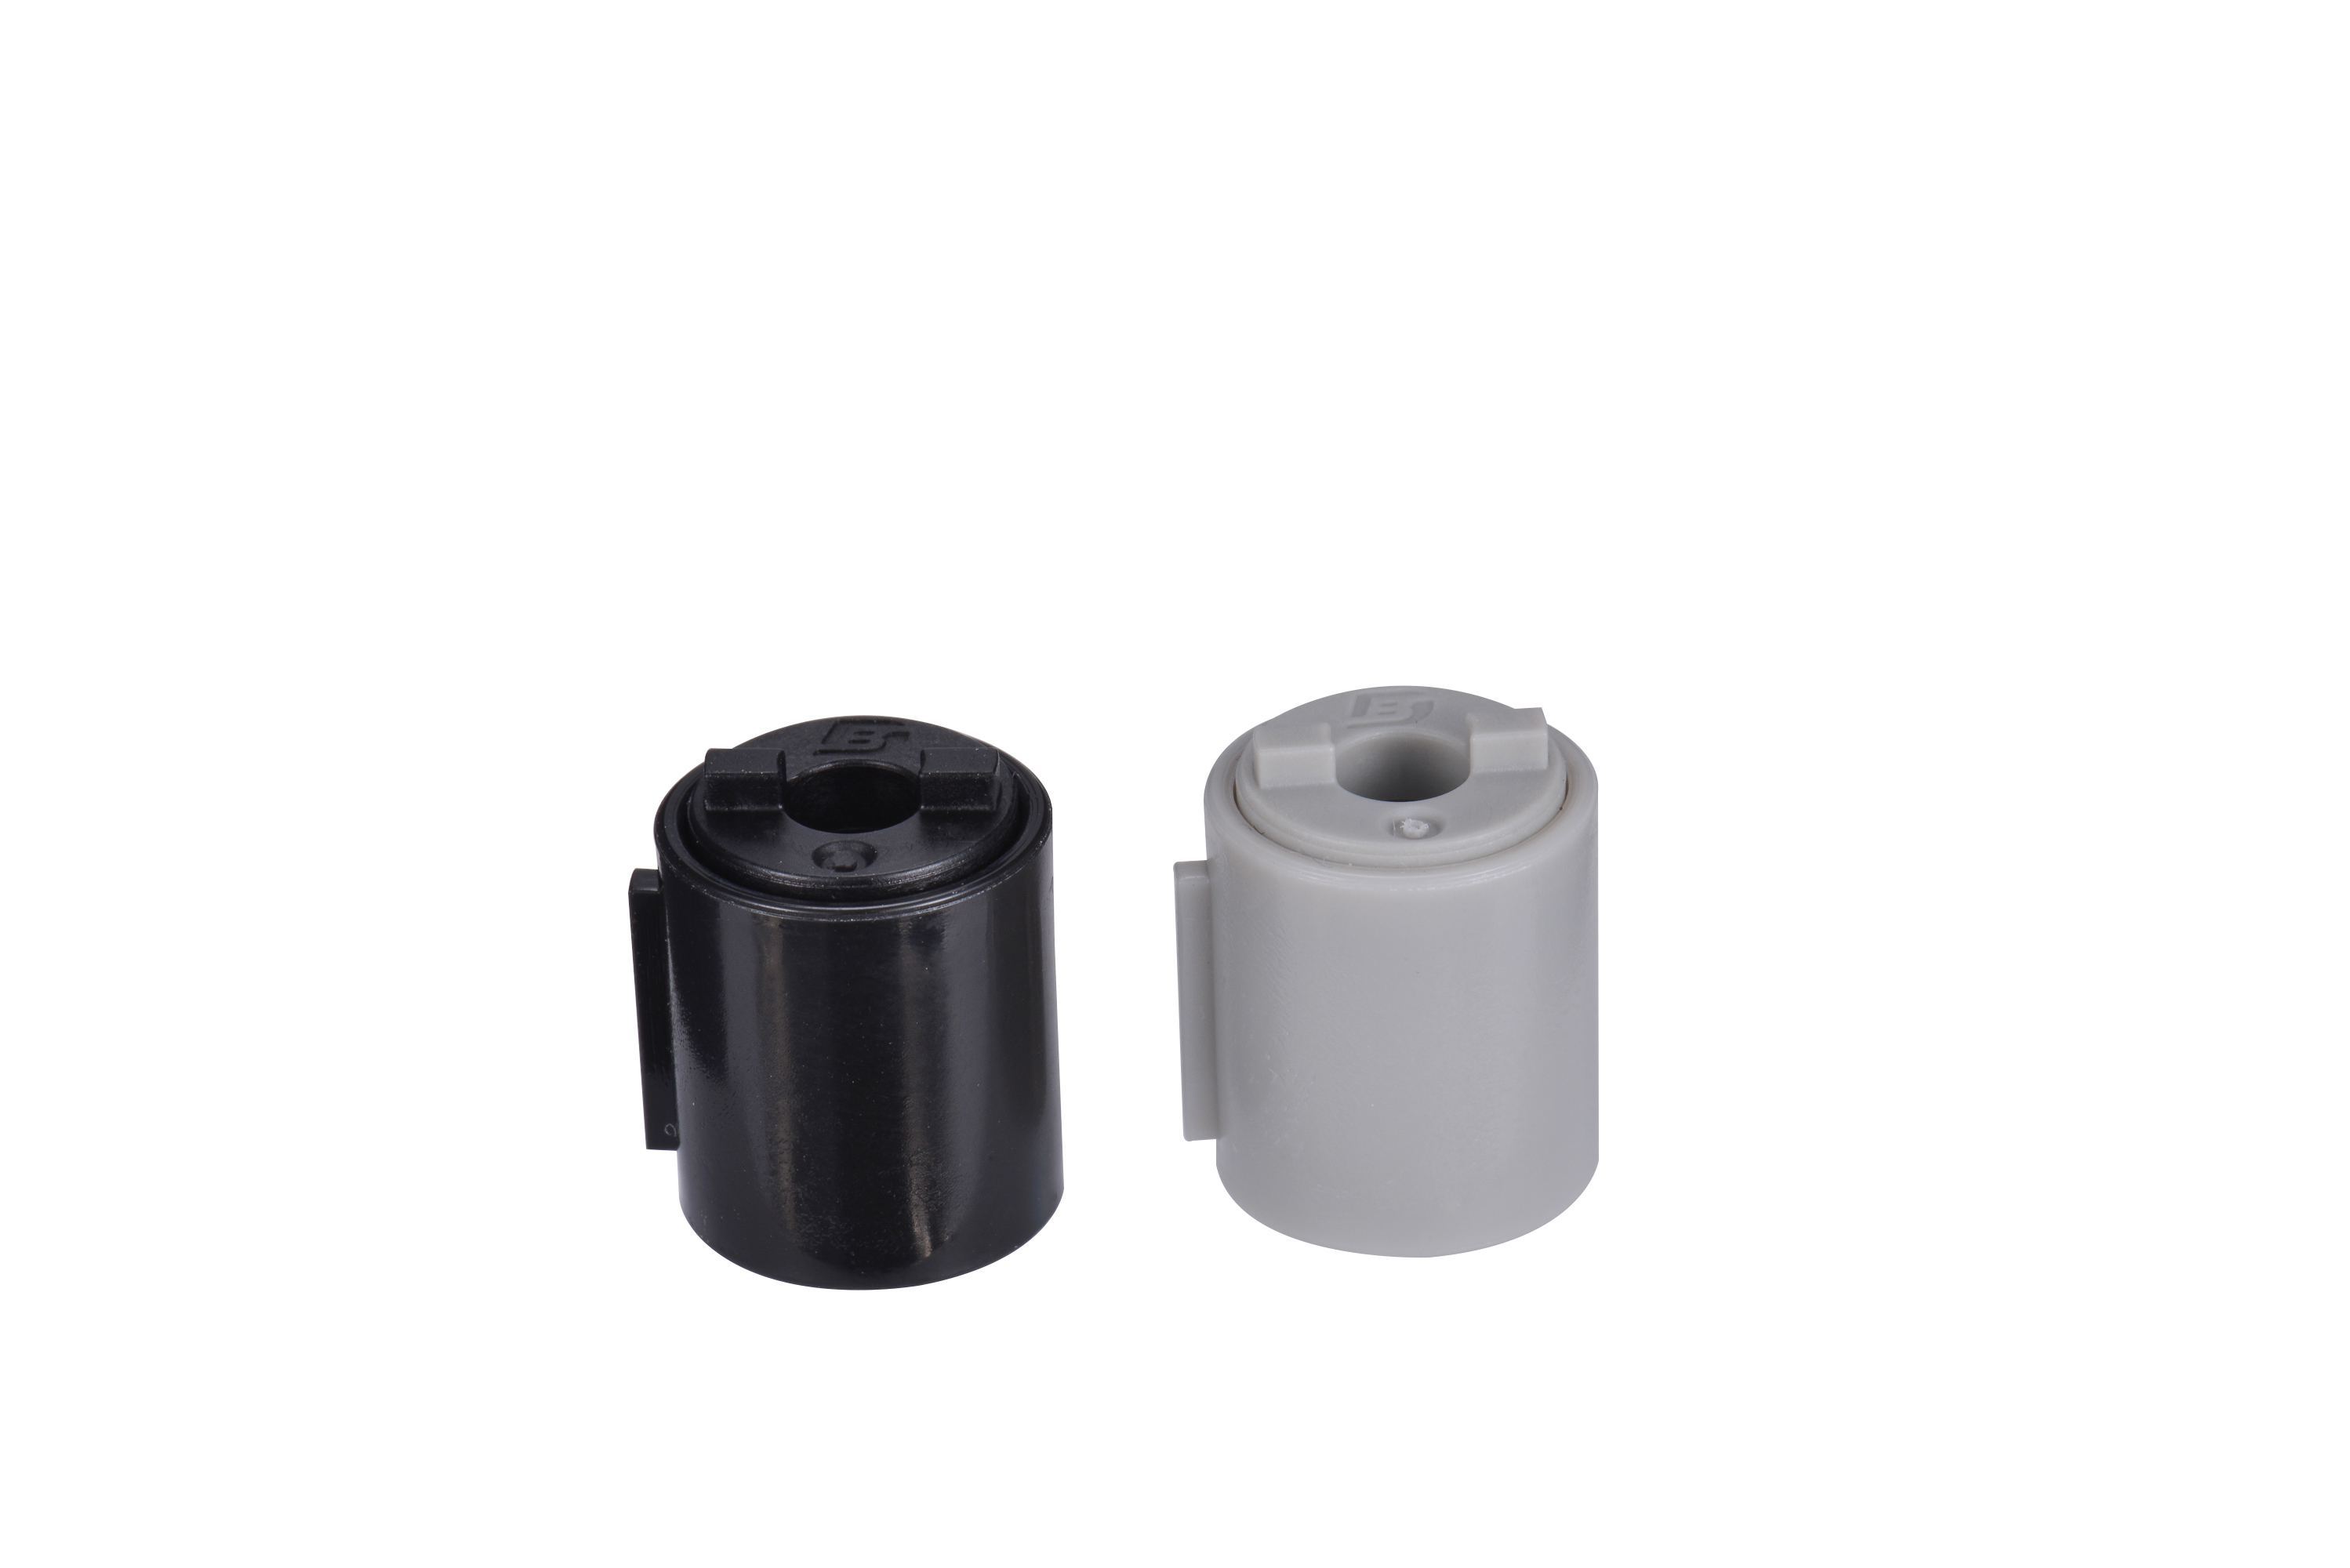 Dobond – mini amortisseur de charnière, petit baril, composants matériels pour véhicule automobile